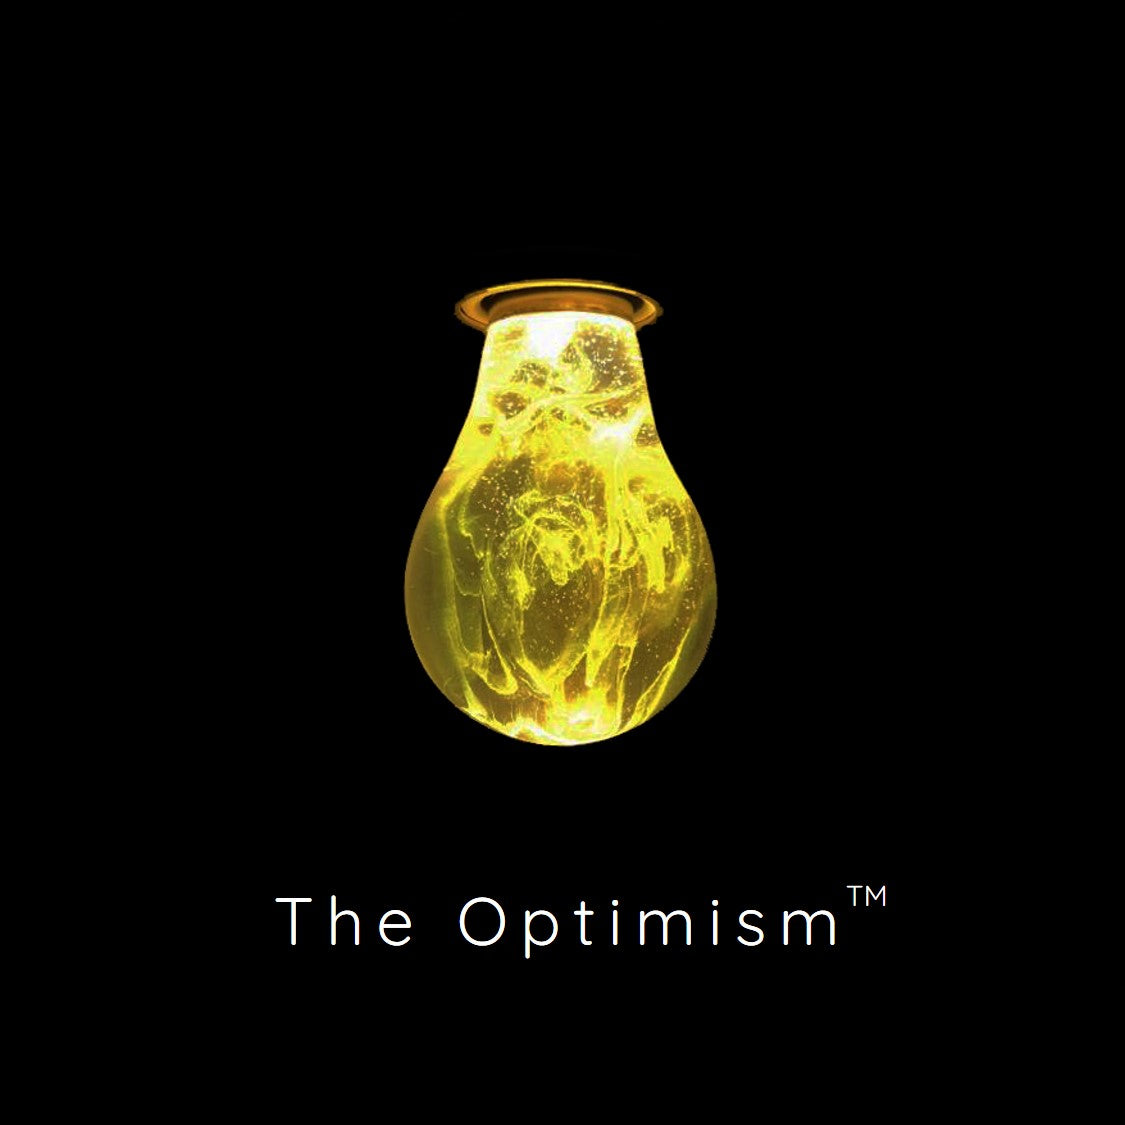 The Optimism™